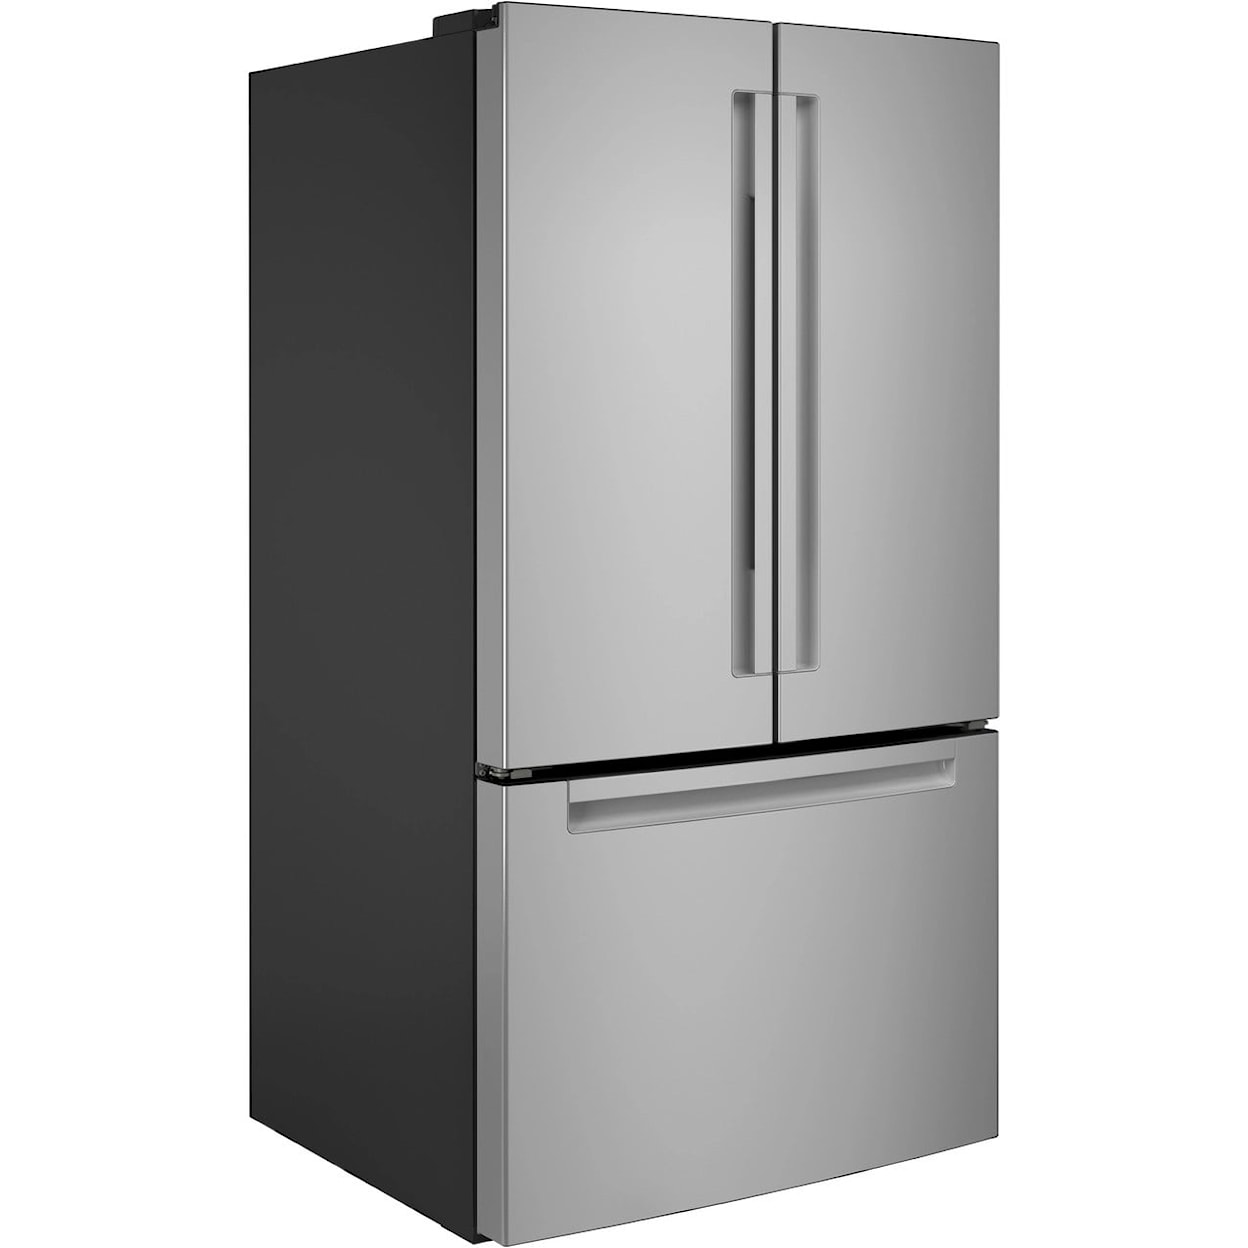 Haier Appliances Refrigerators Refrigerator and Freezer